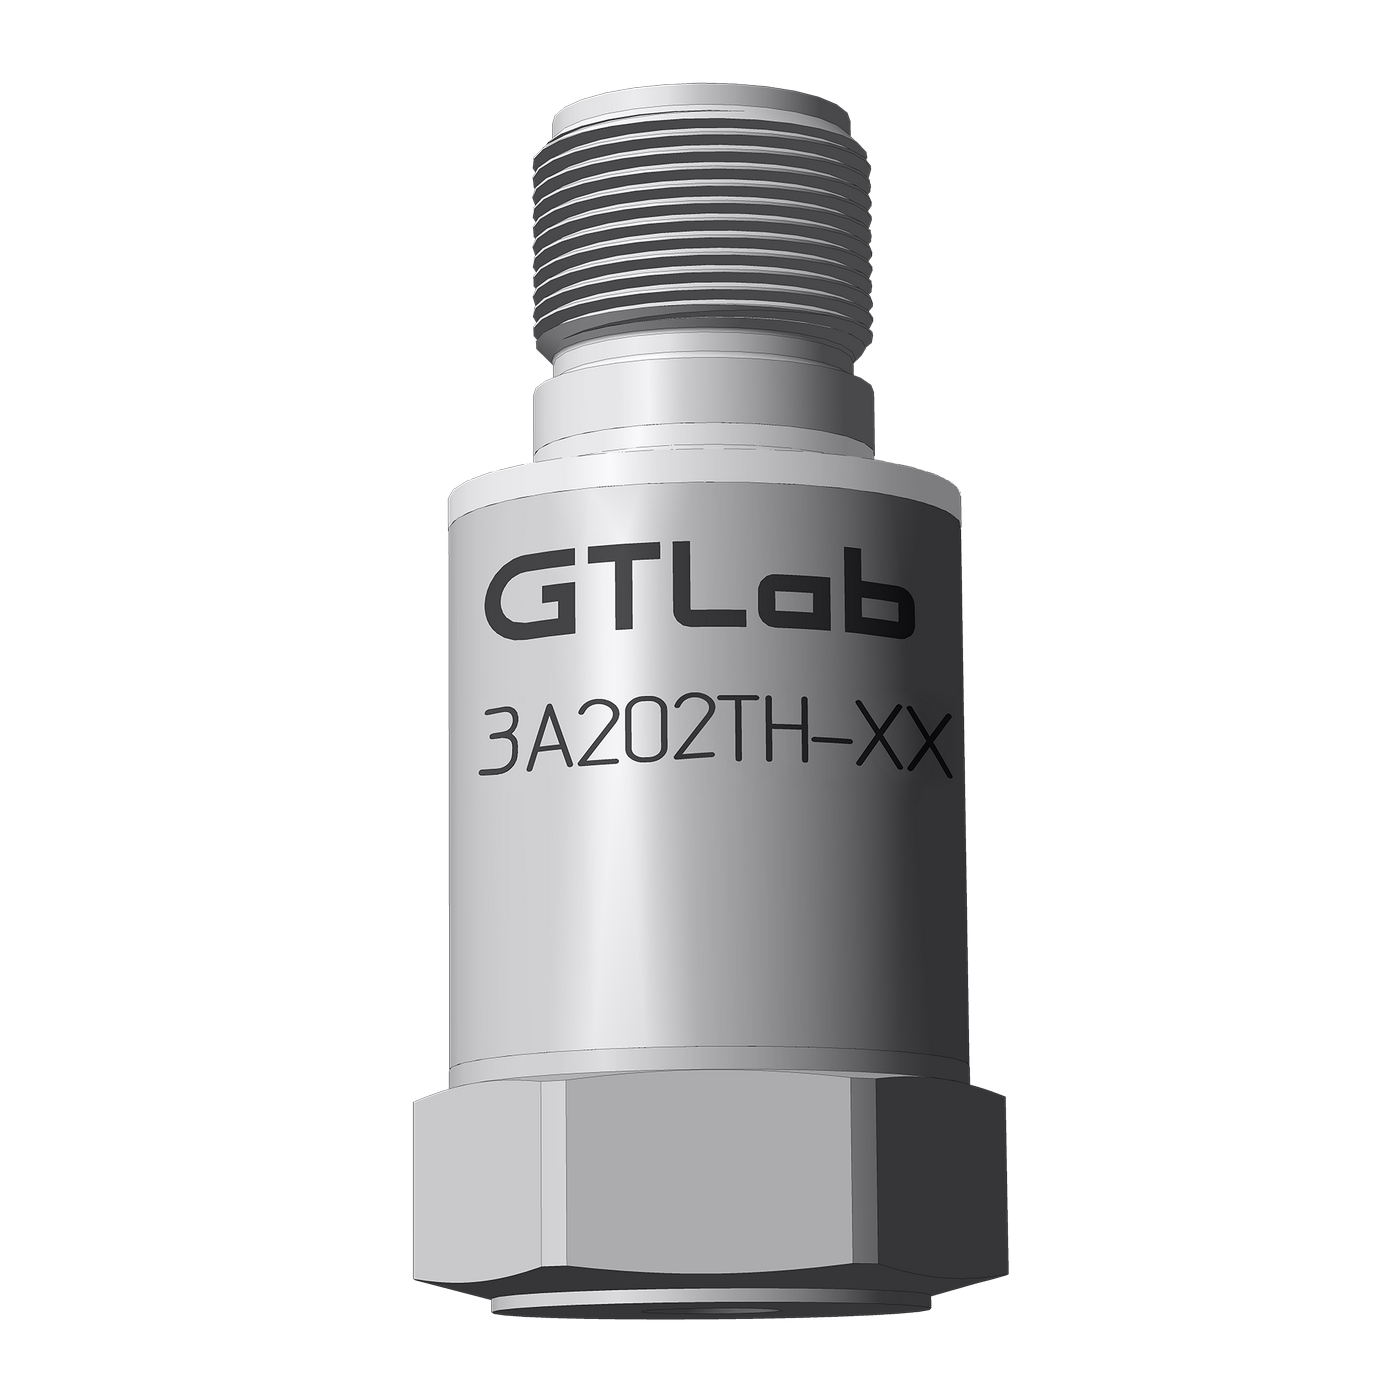 Датчик виброперемещения с токовым выходом промышленный GTLAB 3A202TH-640 Дозиметры